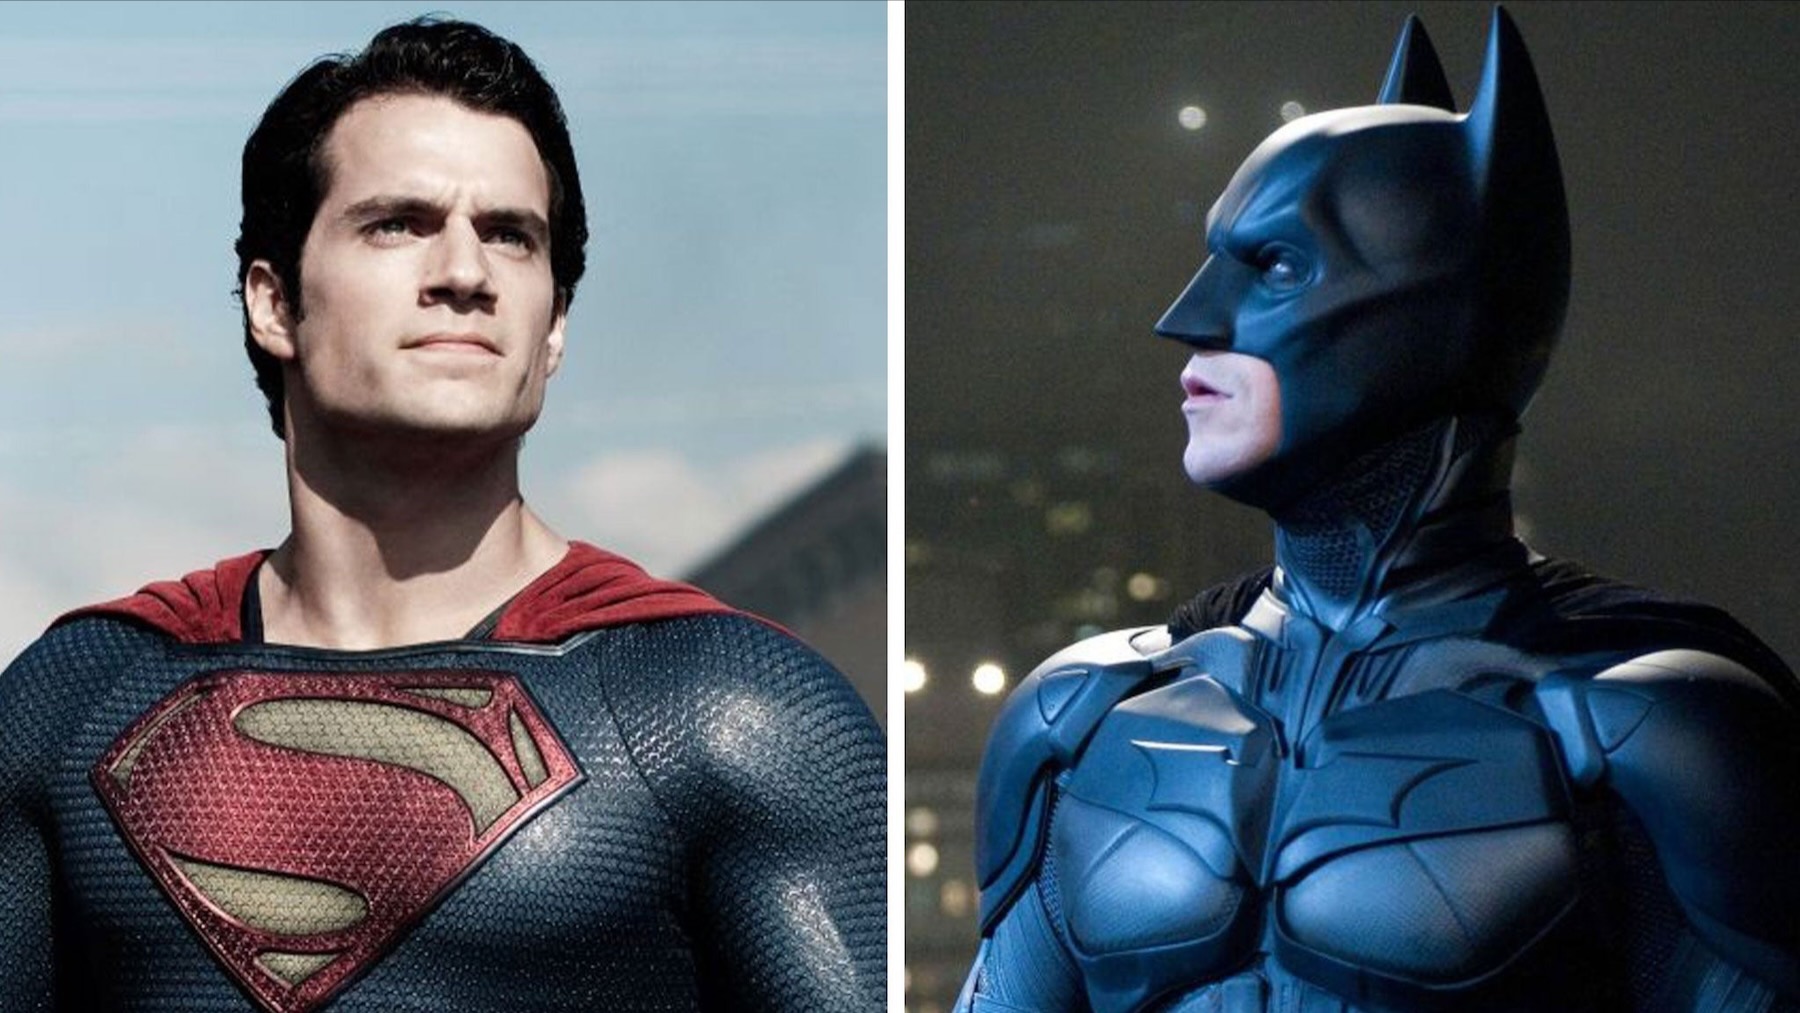 Explication des expirations des droits d'auteur de Superman et Batman de DC